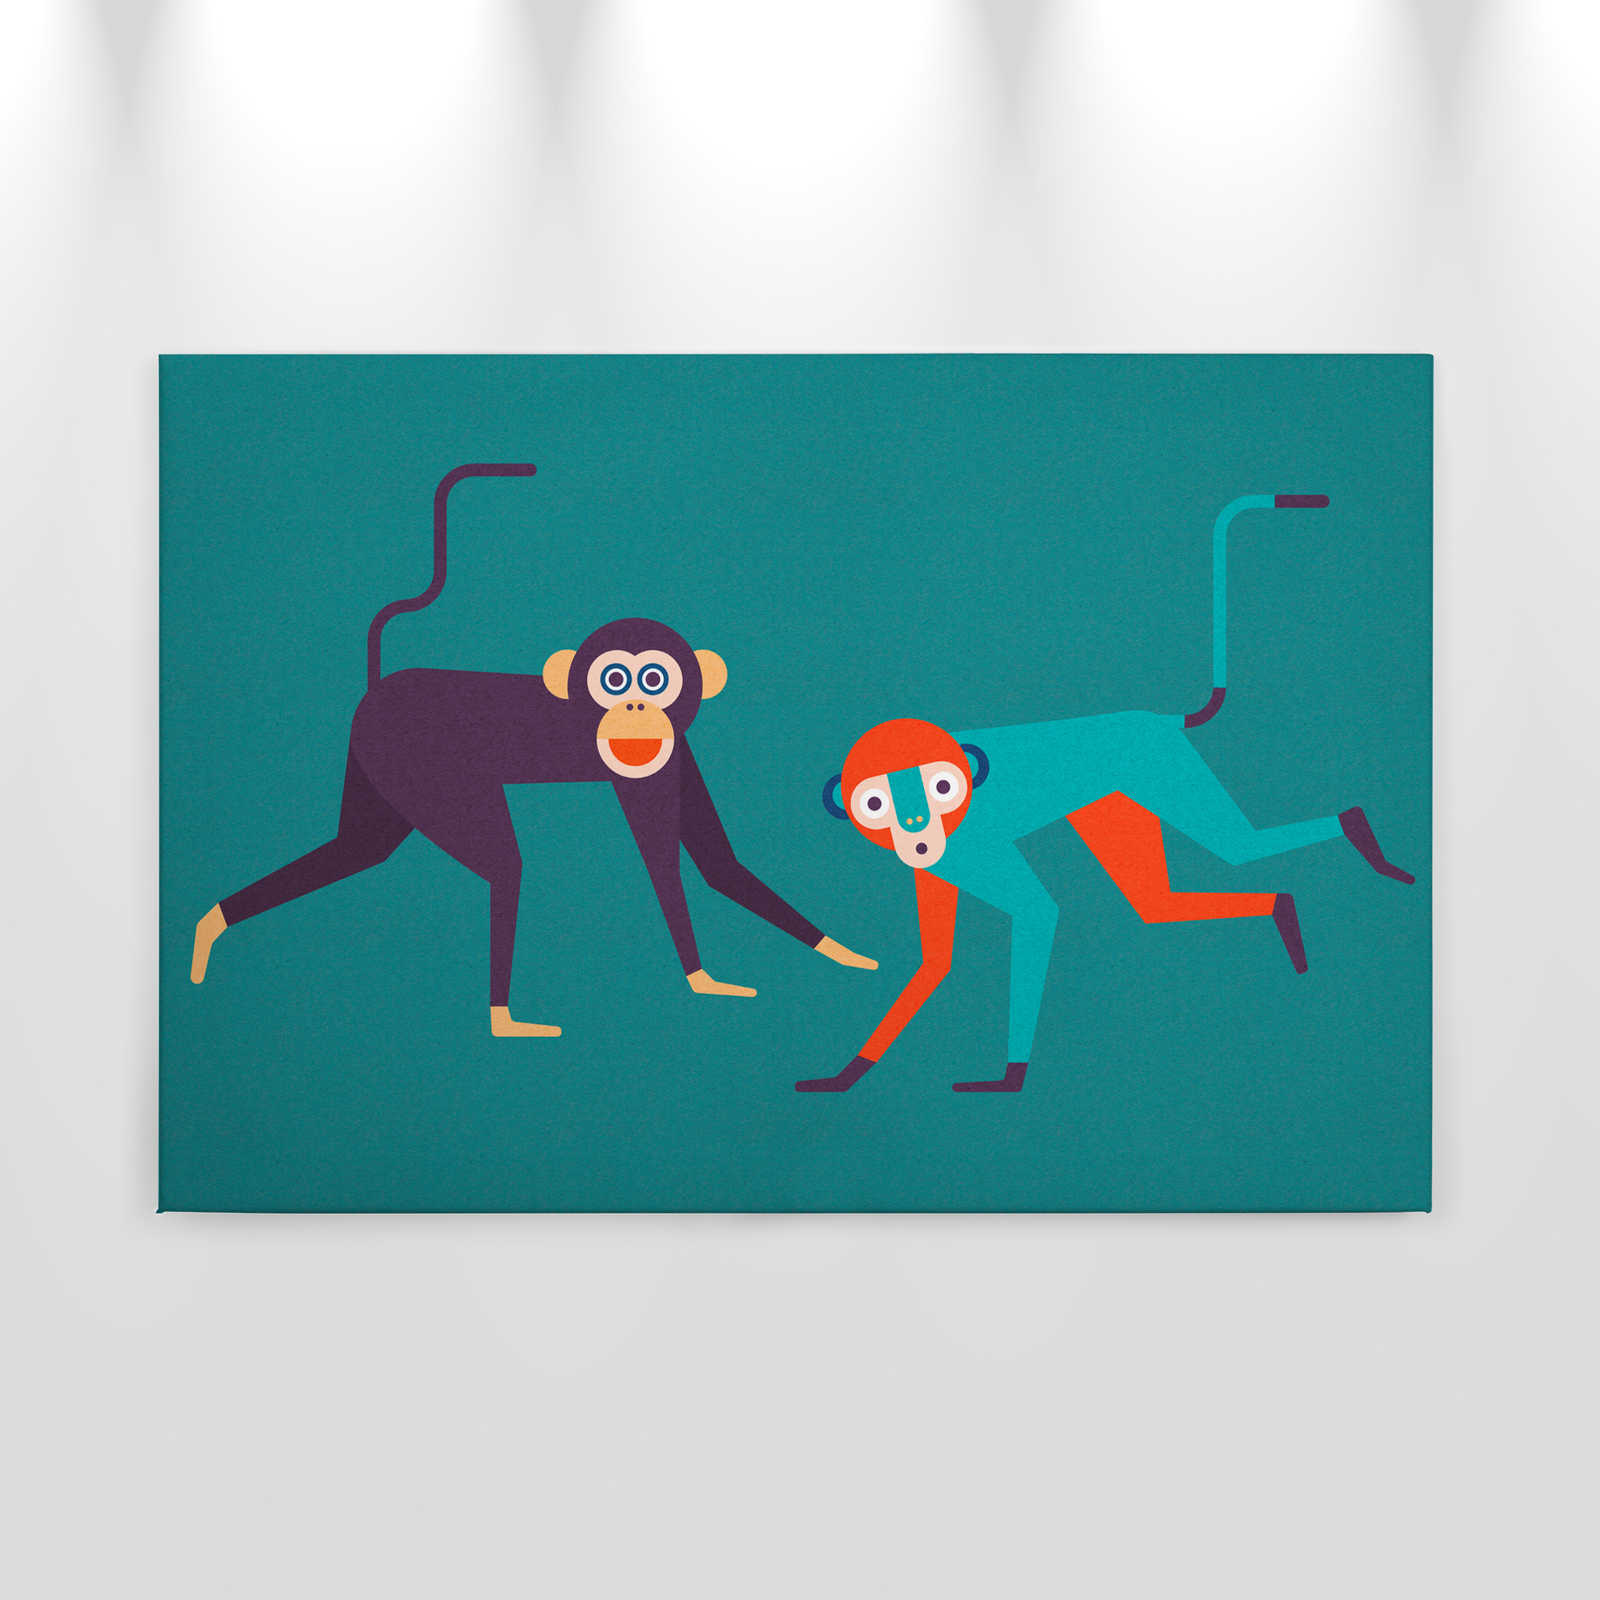             Monkey Business 1 - Canvas schilderij in kartonnen structuur, apenbende in komische stijl - 0.90 m x 0.60 m
        